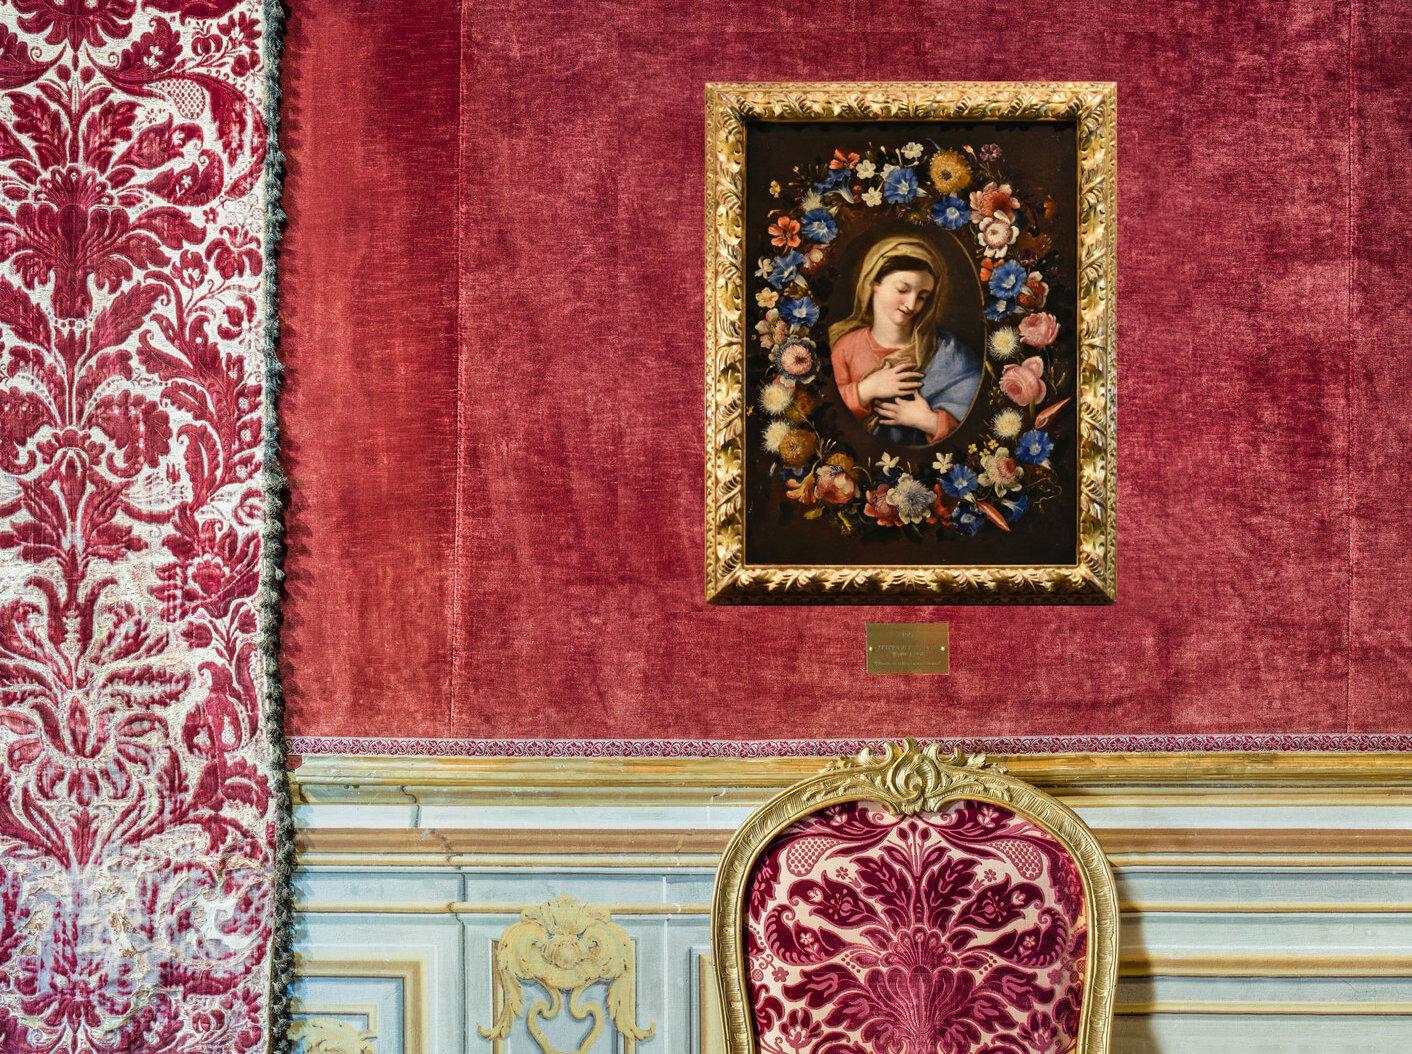 Blumenstillleben, Jungfrau Trevisani Stanchi, Gemälde, Öl auf Leinwand, 17./18. Jahrhundert (Alte Meister), Painting, von Francesco Trevisani (Capodistria 1656 - Rome 1746) 